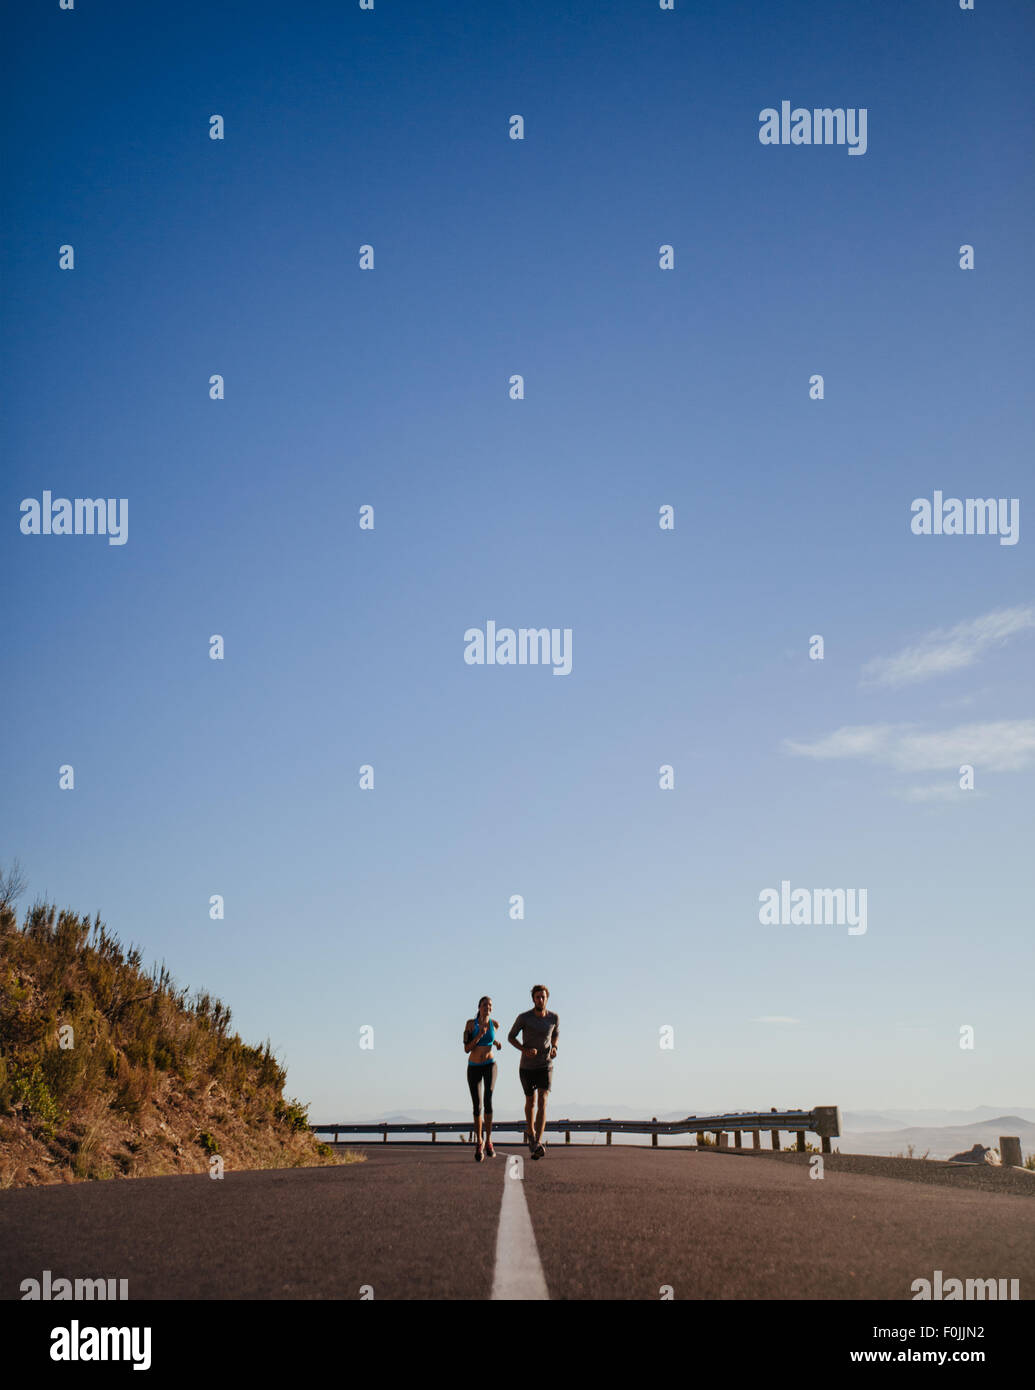 Entfernten Schuss von zwei jungen Läufer laufen auf offener Landstraße mit blauem Himmel. Zwei junge Mann und Frau Joggen im Freien auf einer summ Stockfoto